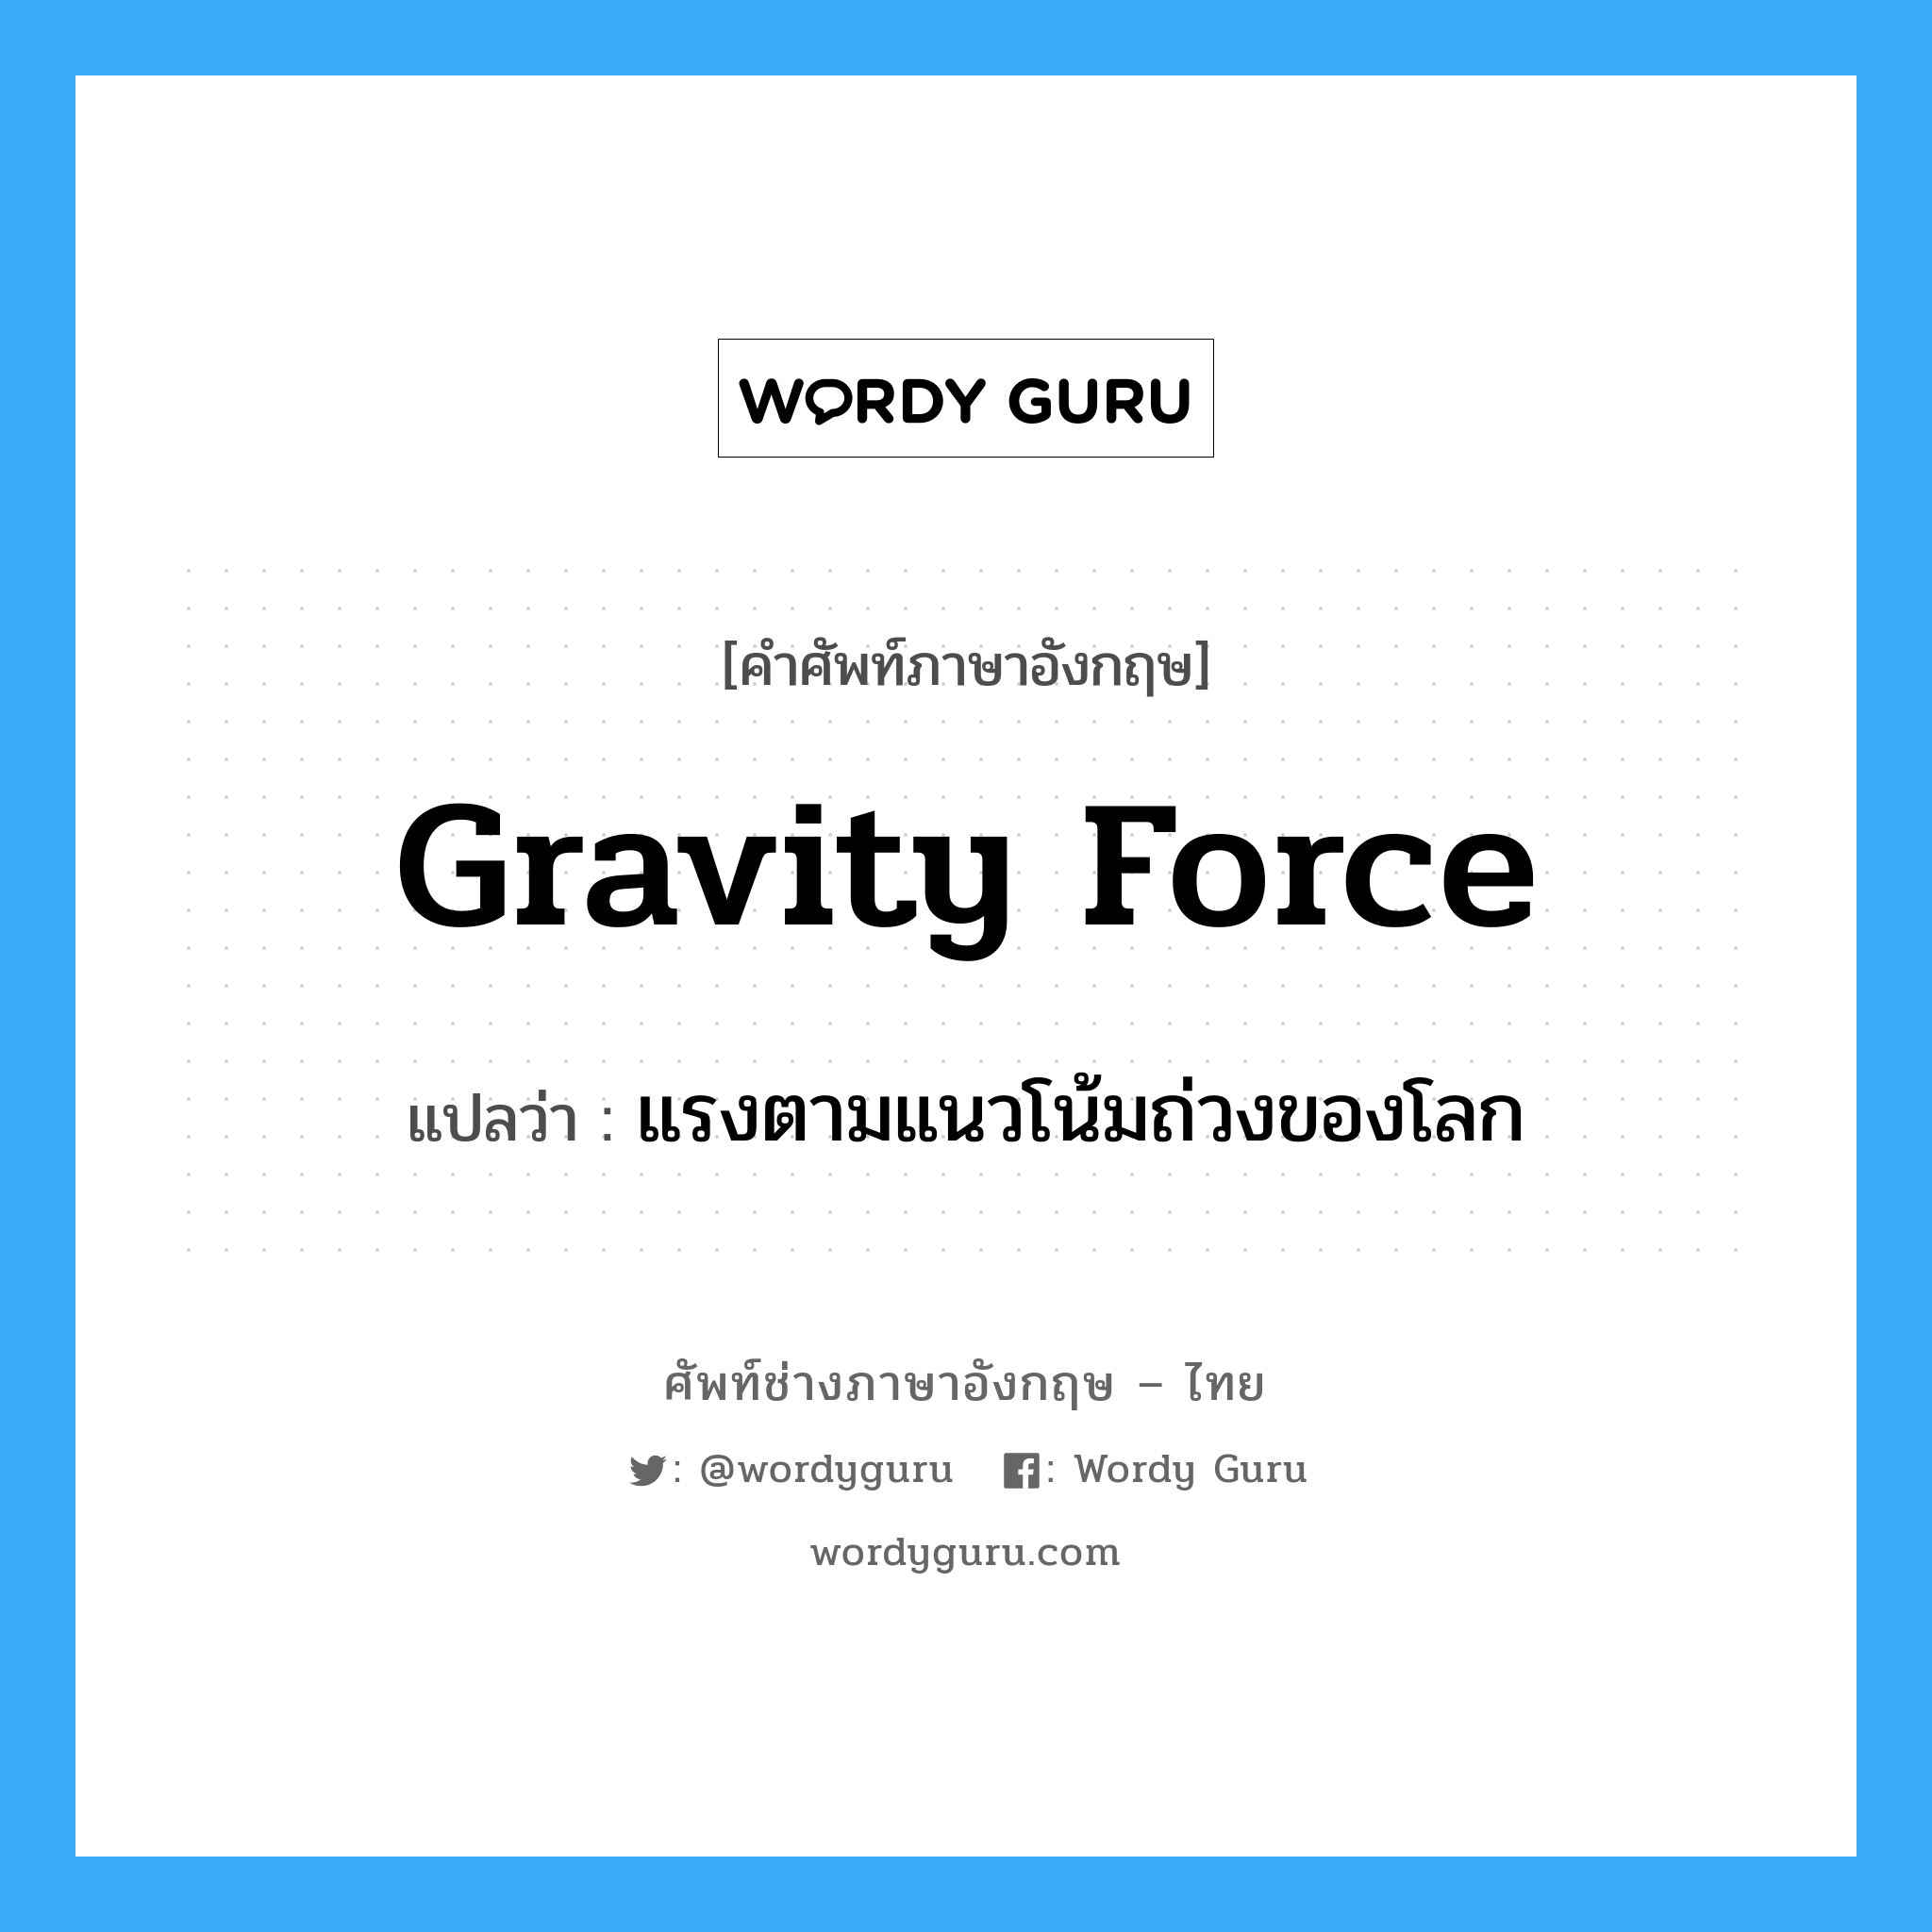 แรงตามแนวโน้มถ่วงของโลก ภาษาอังกฤษ?, คำศัพท์ช่างภาษาอังกฤษ - ไทย แรงตามแนวโน้มถ่วงของโลก คำศัพท์ภาษาอังกฤษ แรงตามแนวโน้มถ่วงของโลก แปลว่า gravity force